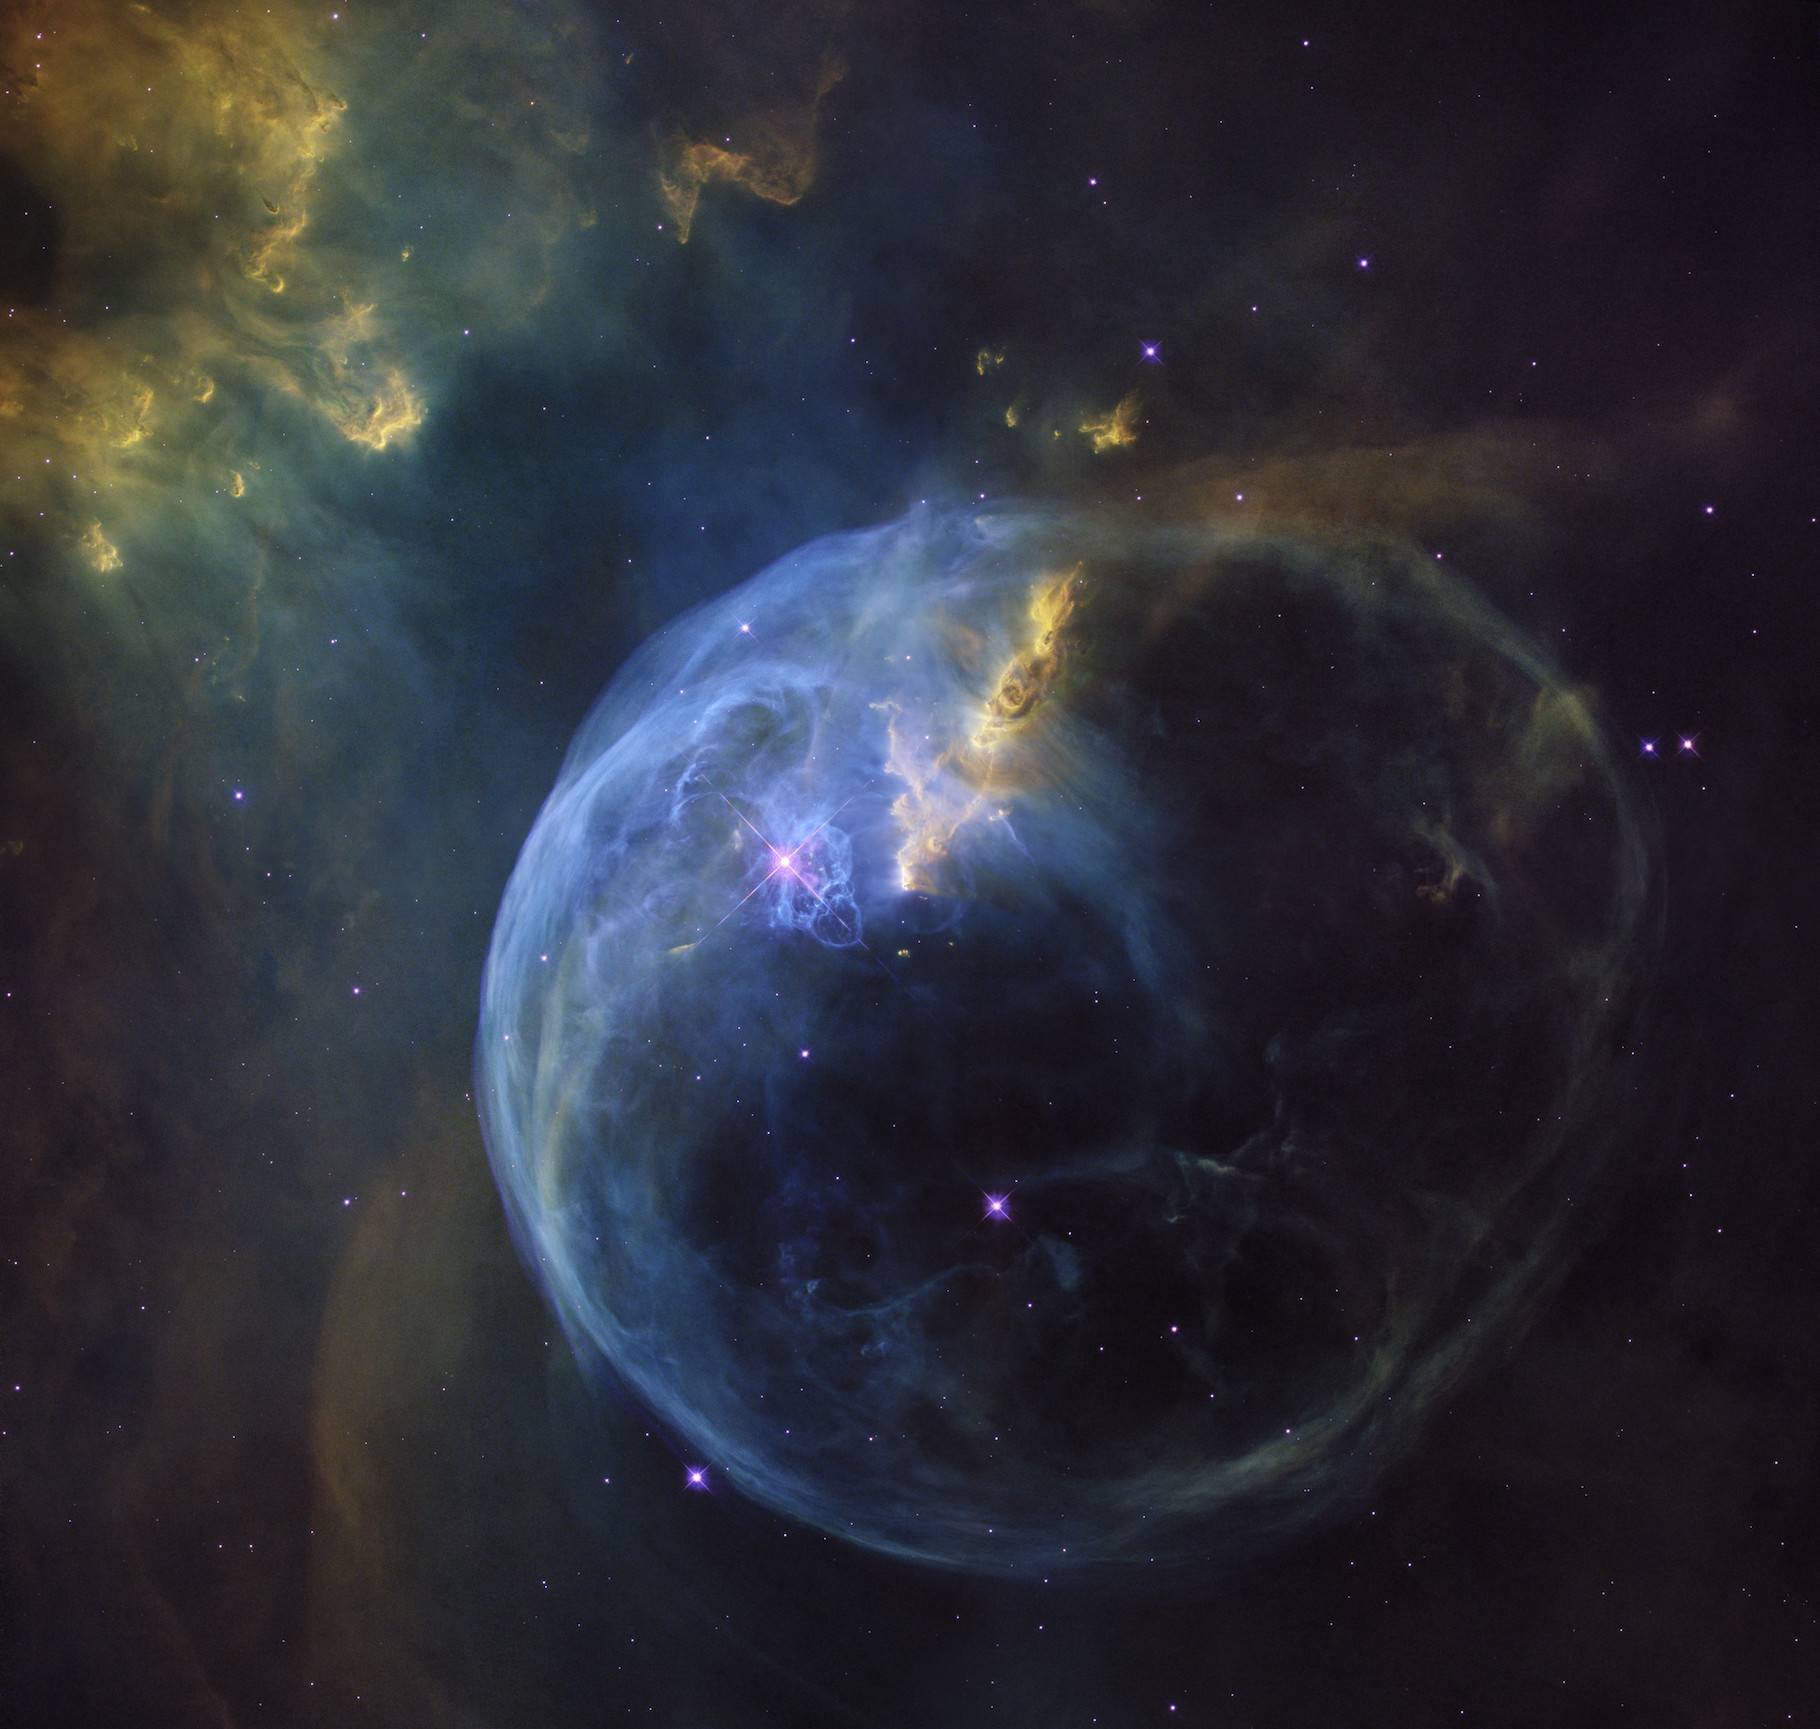 La nébuleuse de la Bulle se situe à quelque 8.000 années-lumière de notre Terre, dans la constellation de Cassiopée. © Nasa, ESA, Hubble Heritage Team